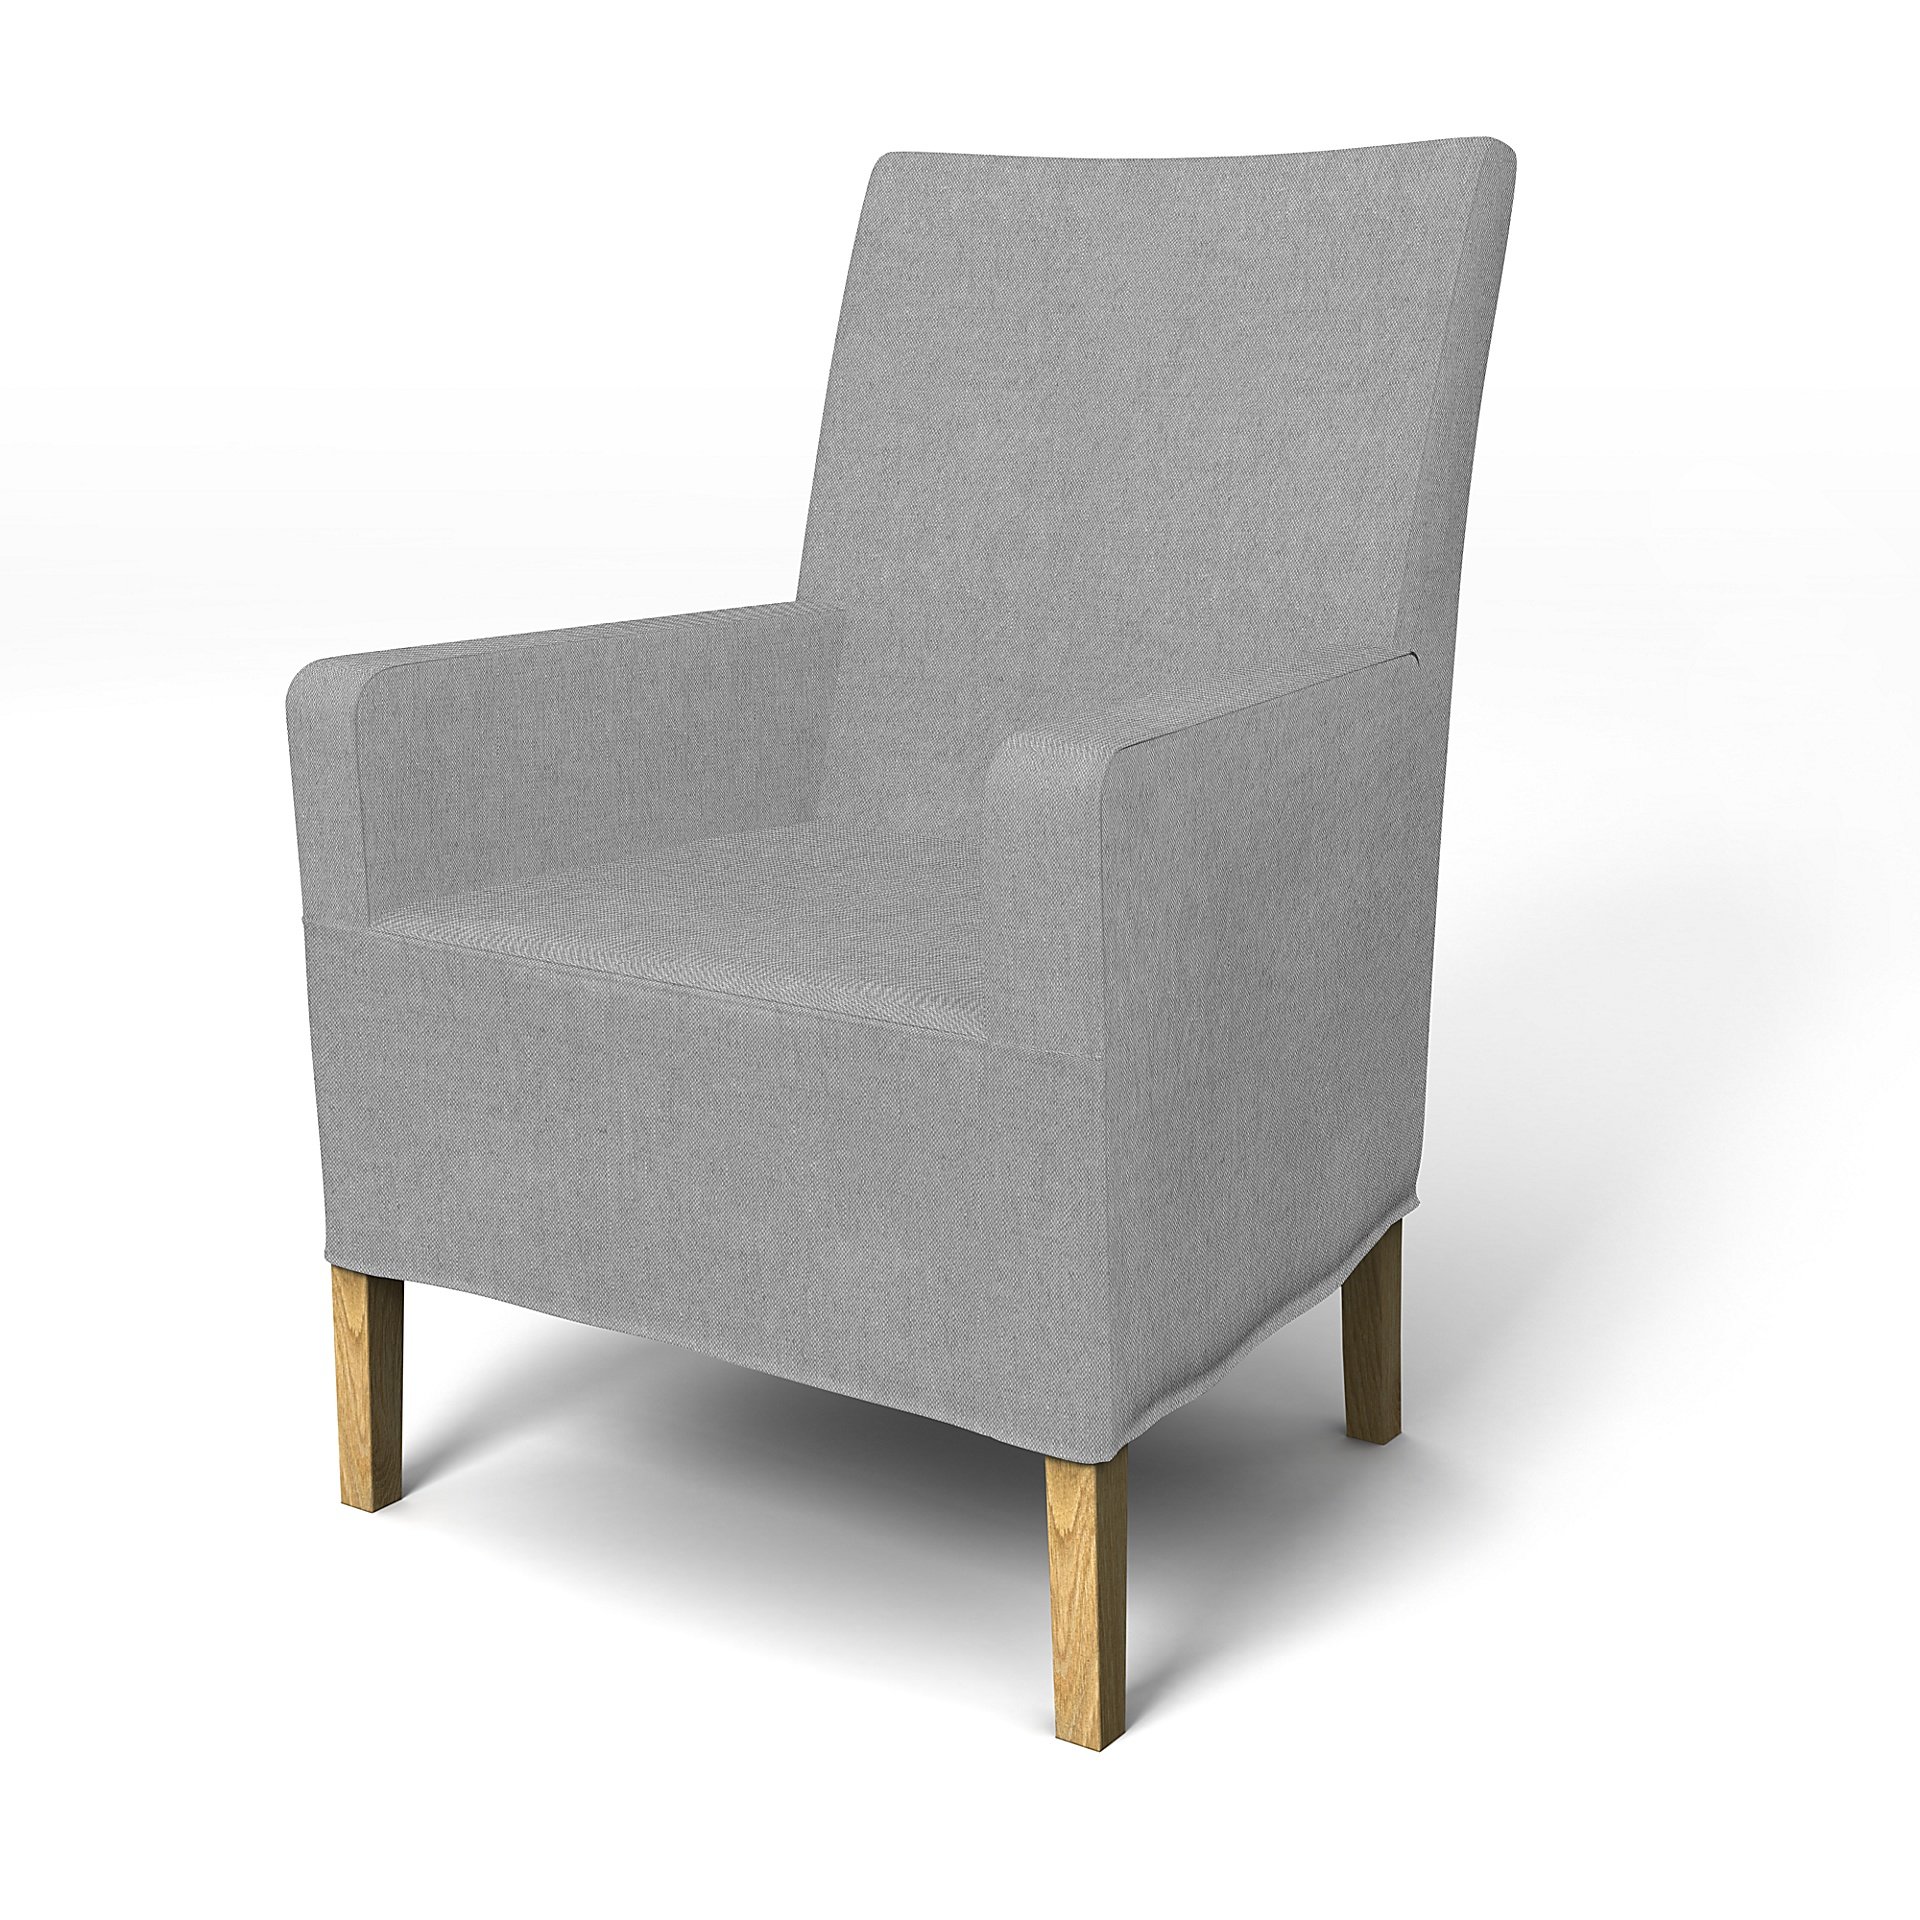 IKEA - Henriksdal, Chair cover w/ armrest, medium length skirt, Graphite, Linen - Bemz